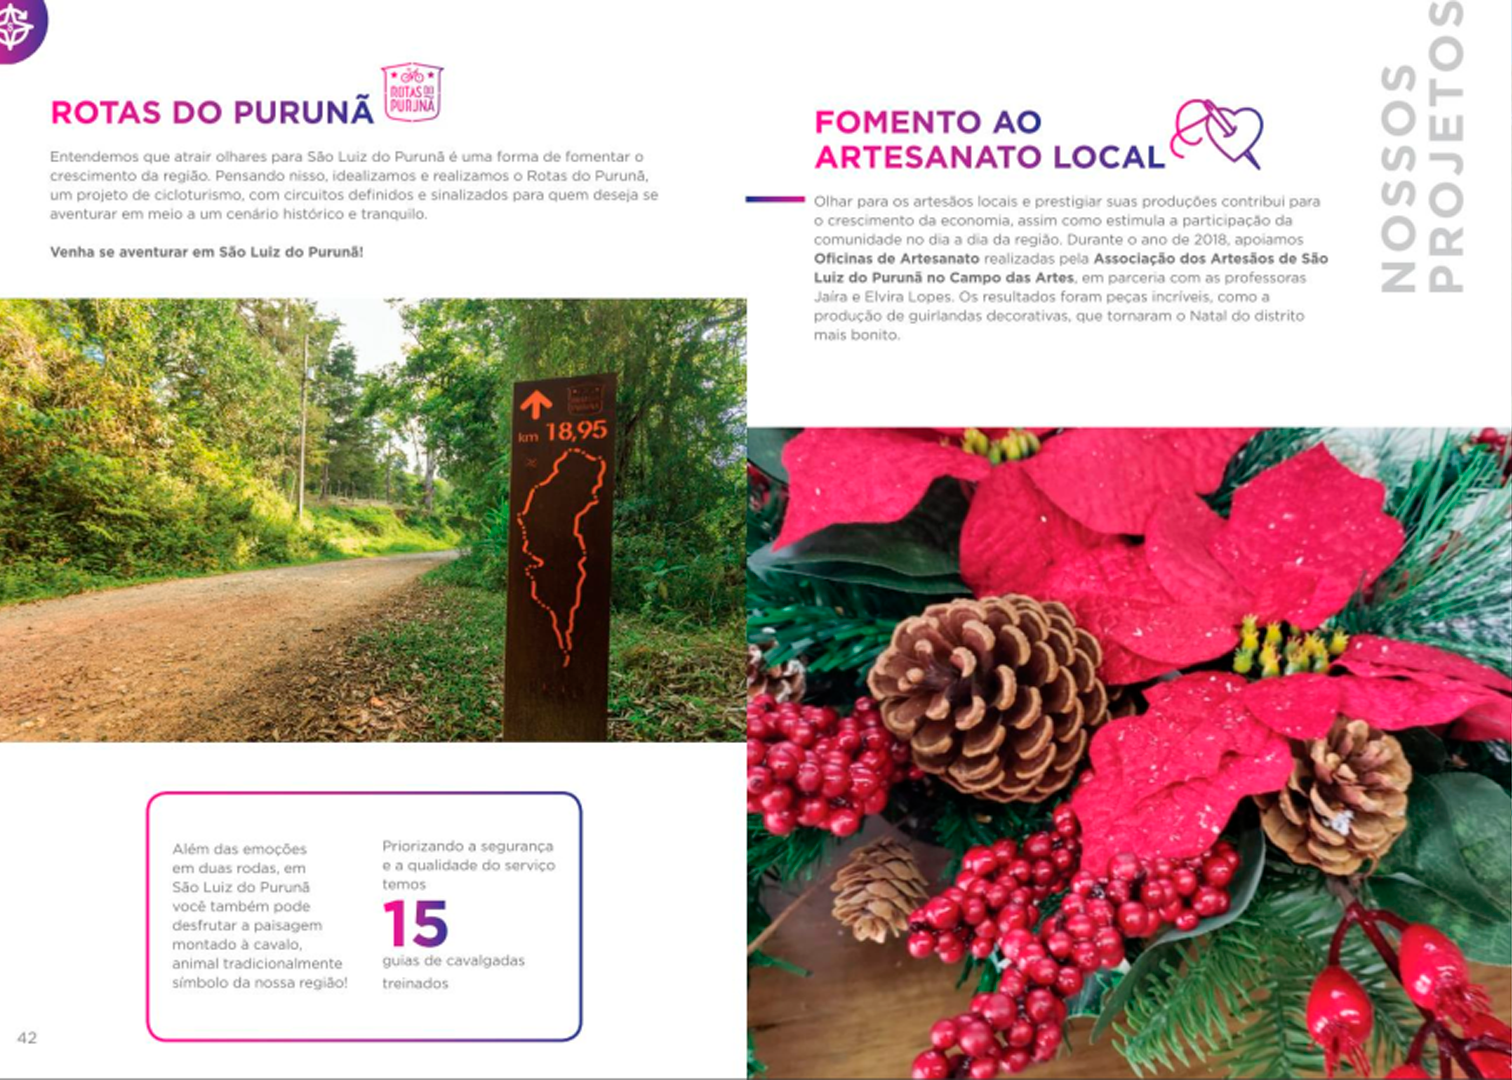 Uma página do relatório do Instituto Purunã mostrando imagens do lugar e explicando um pouco sobre o artesanato local.